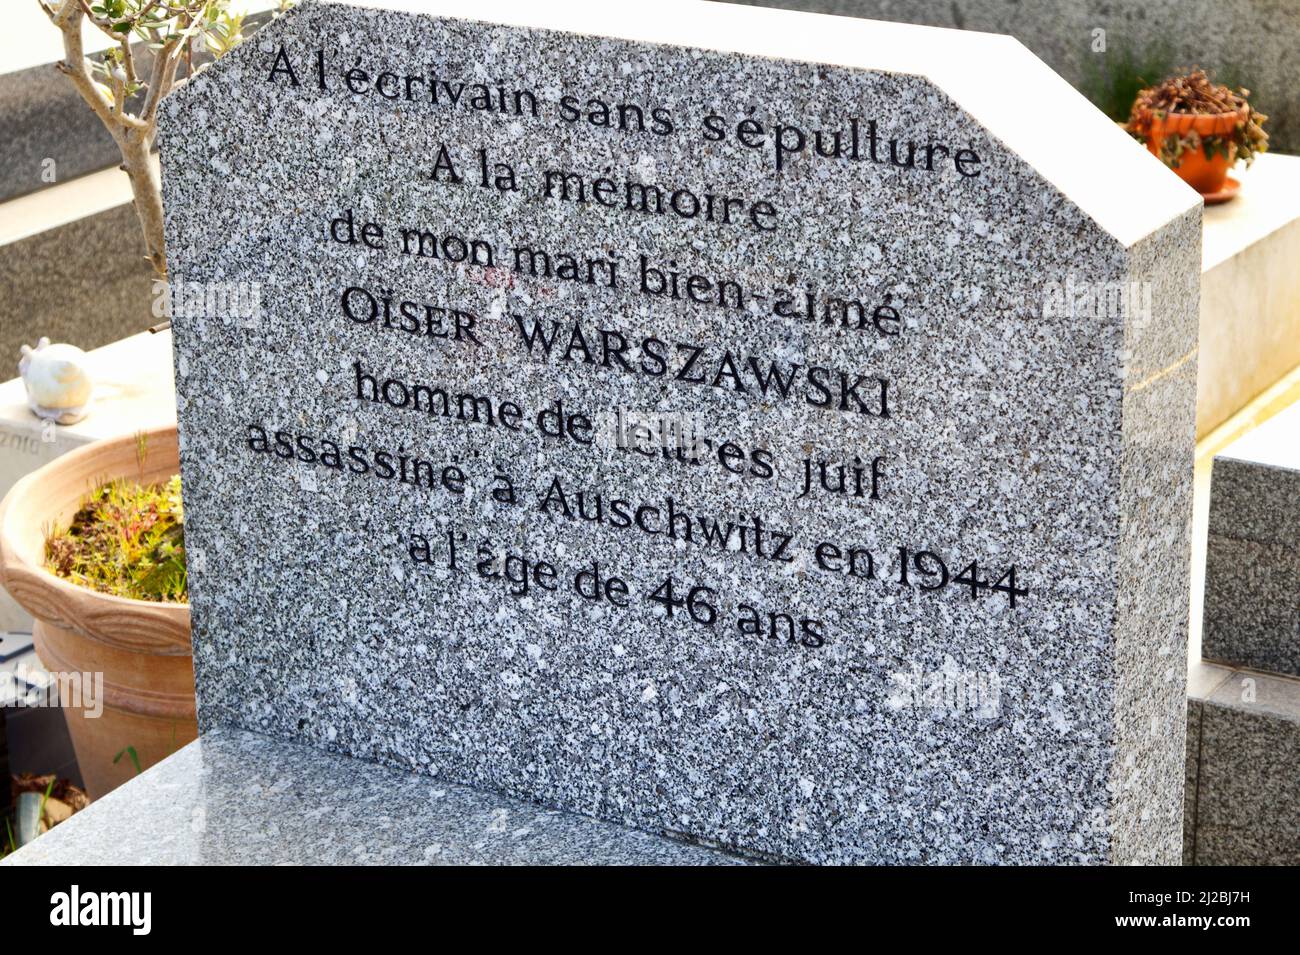 Leere Gräber: Eine Warnung an unser Gedächtnis - der Schriftsteller ohne Sepulture - Kenotaph von Oiser Warszawski, der in Auschwitz getötet wurde - Shoah - Montparnasse Friedhof Stockfoto